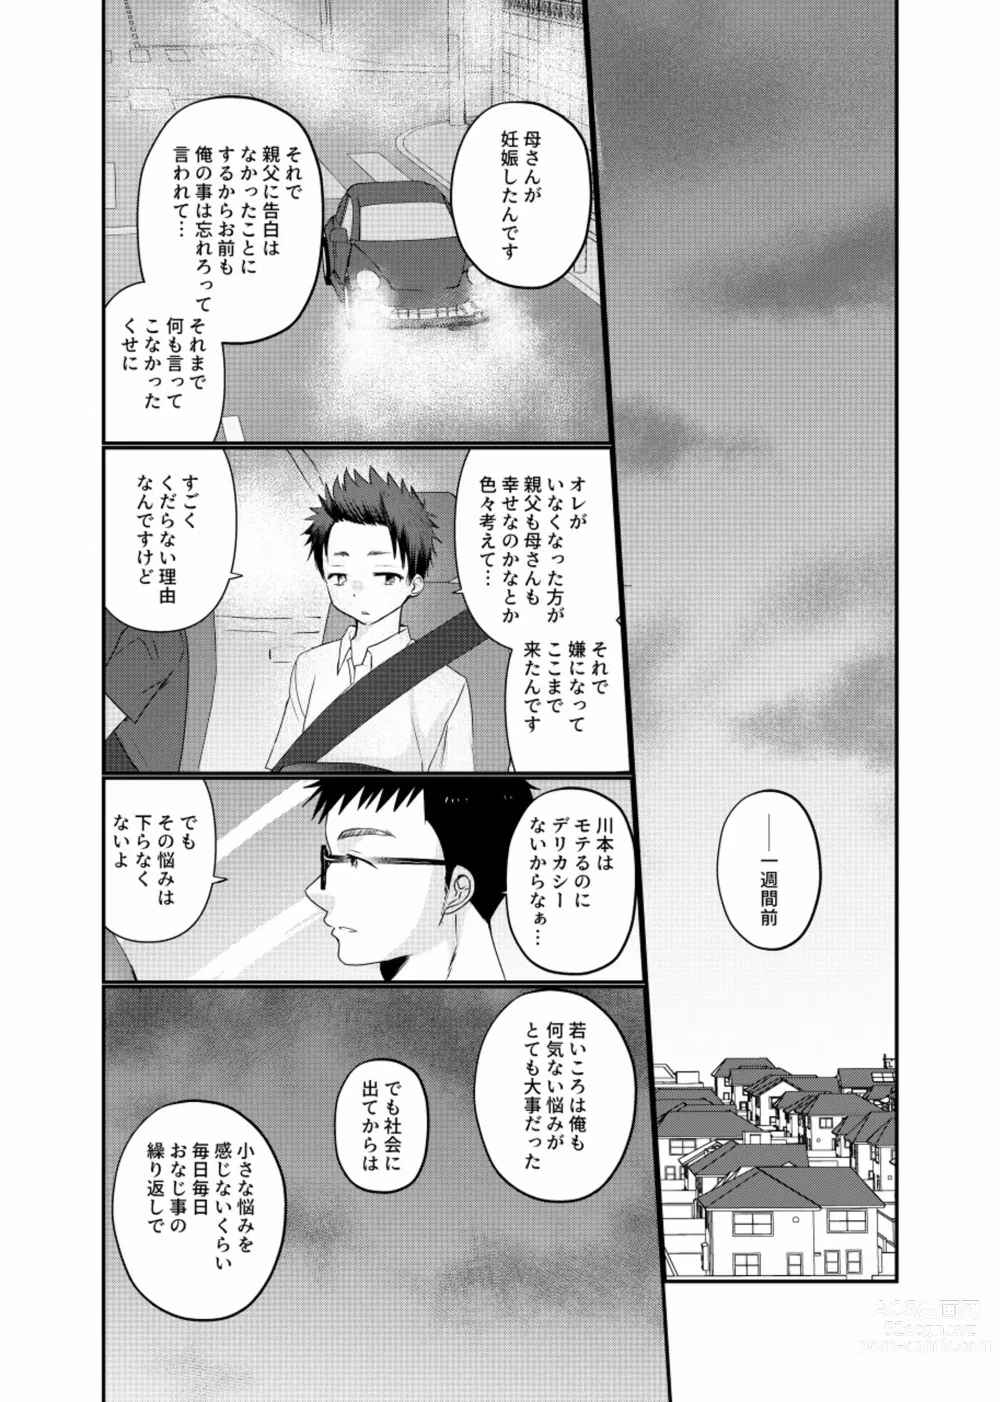 Page 36 of doujinshi Meisou Shounen